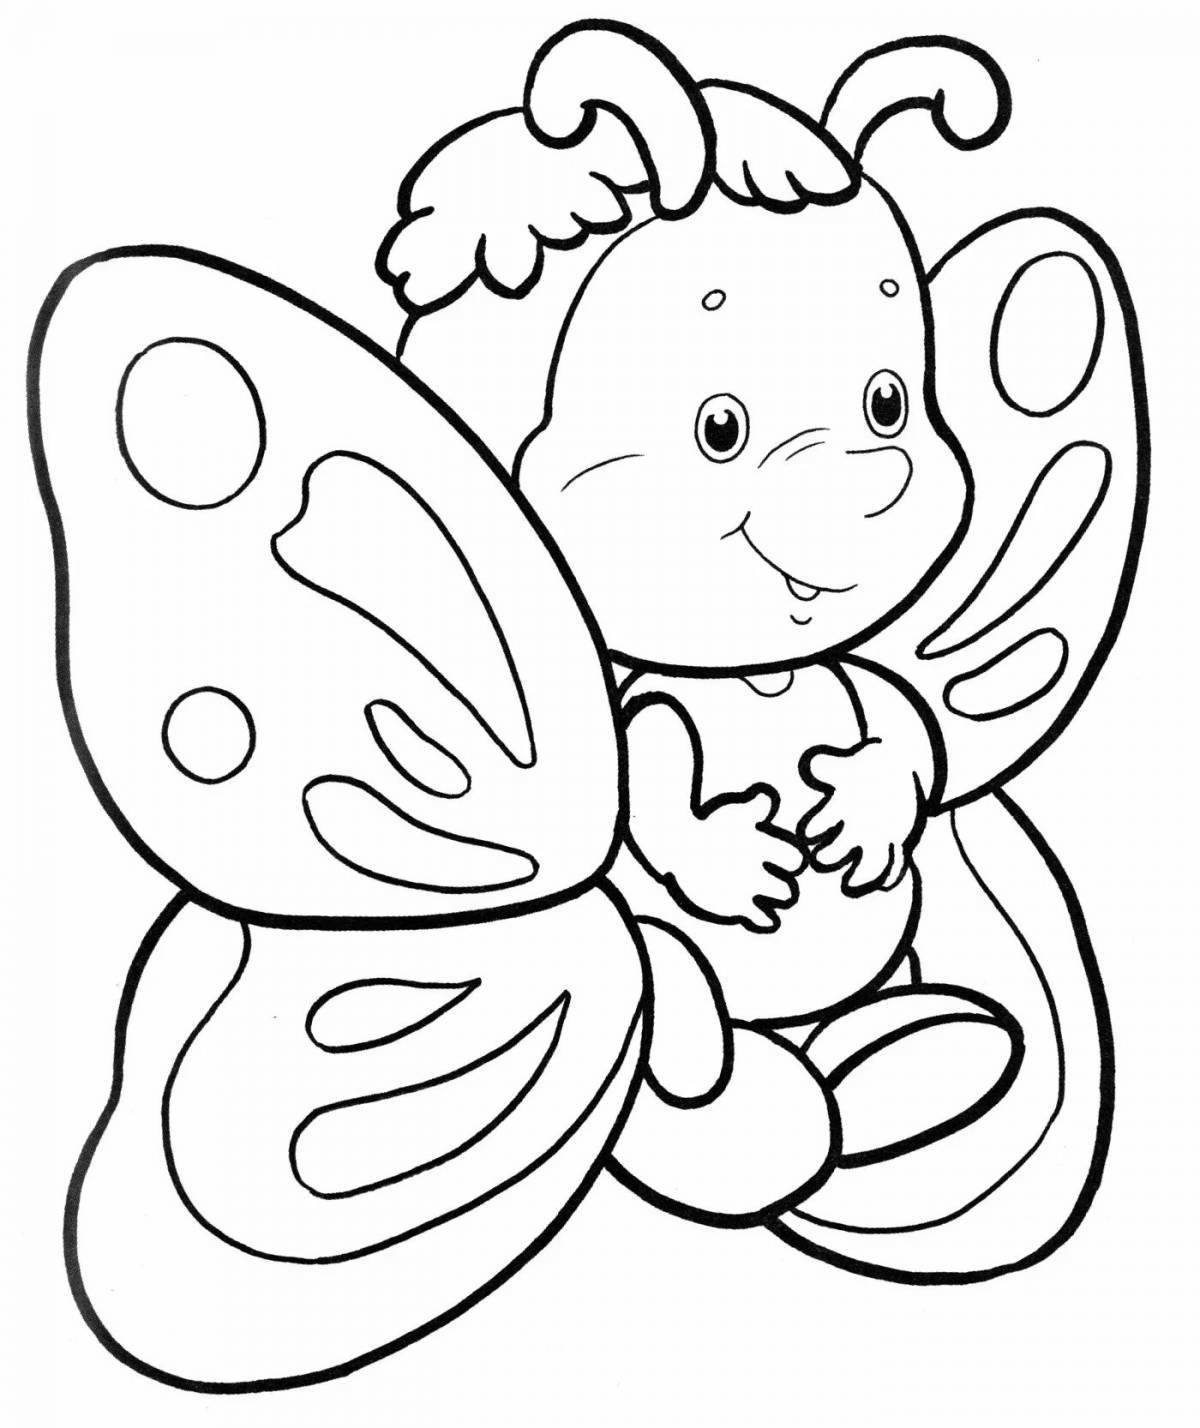 Оживленная бабочка-раскраска для детей